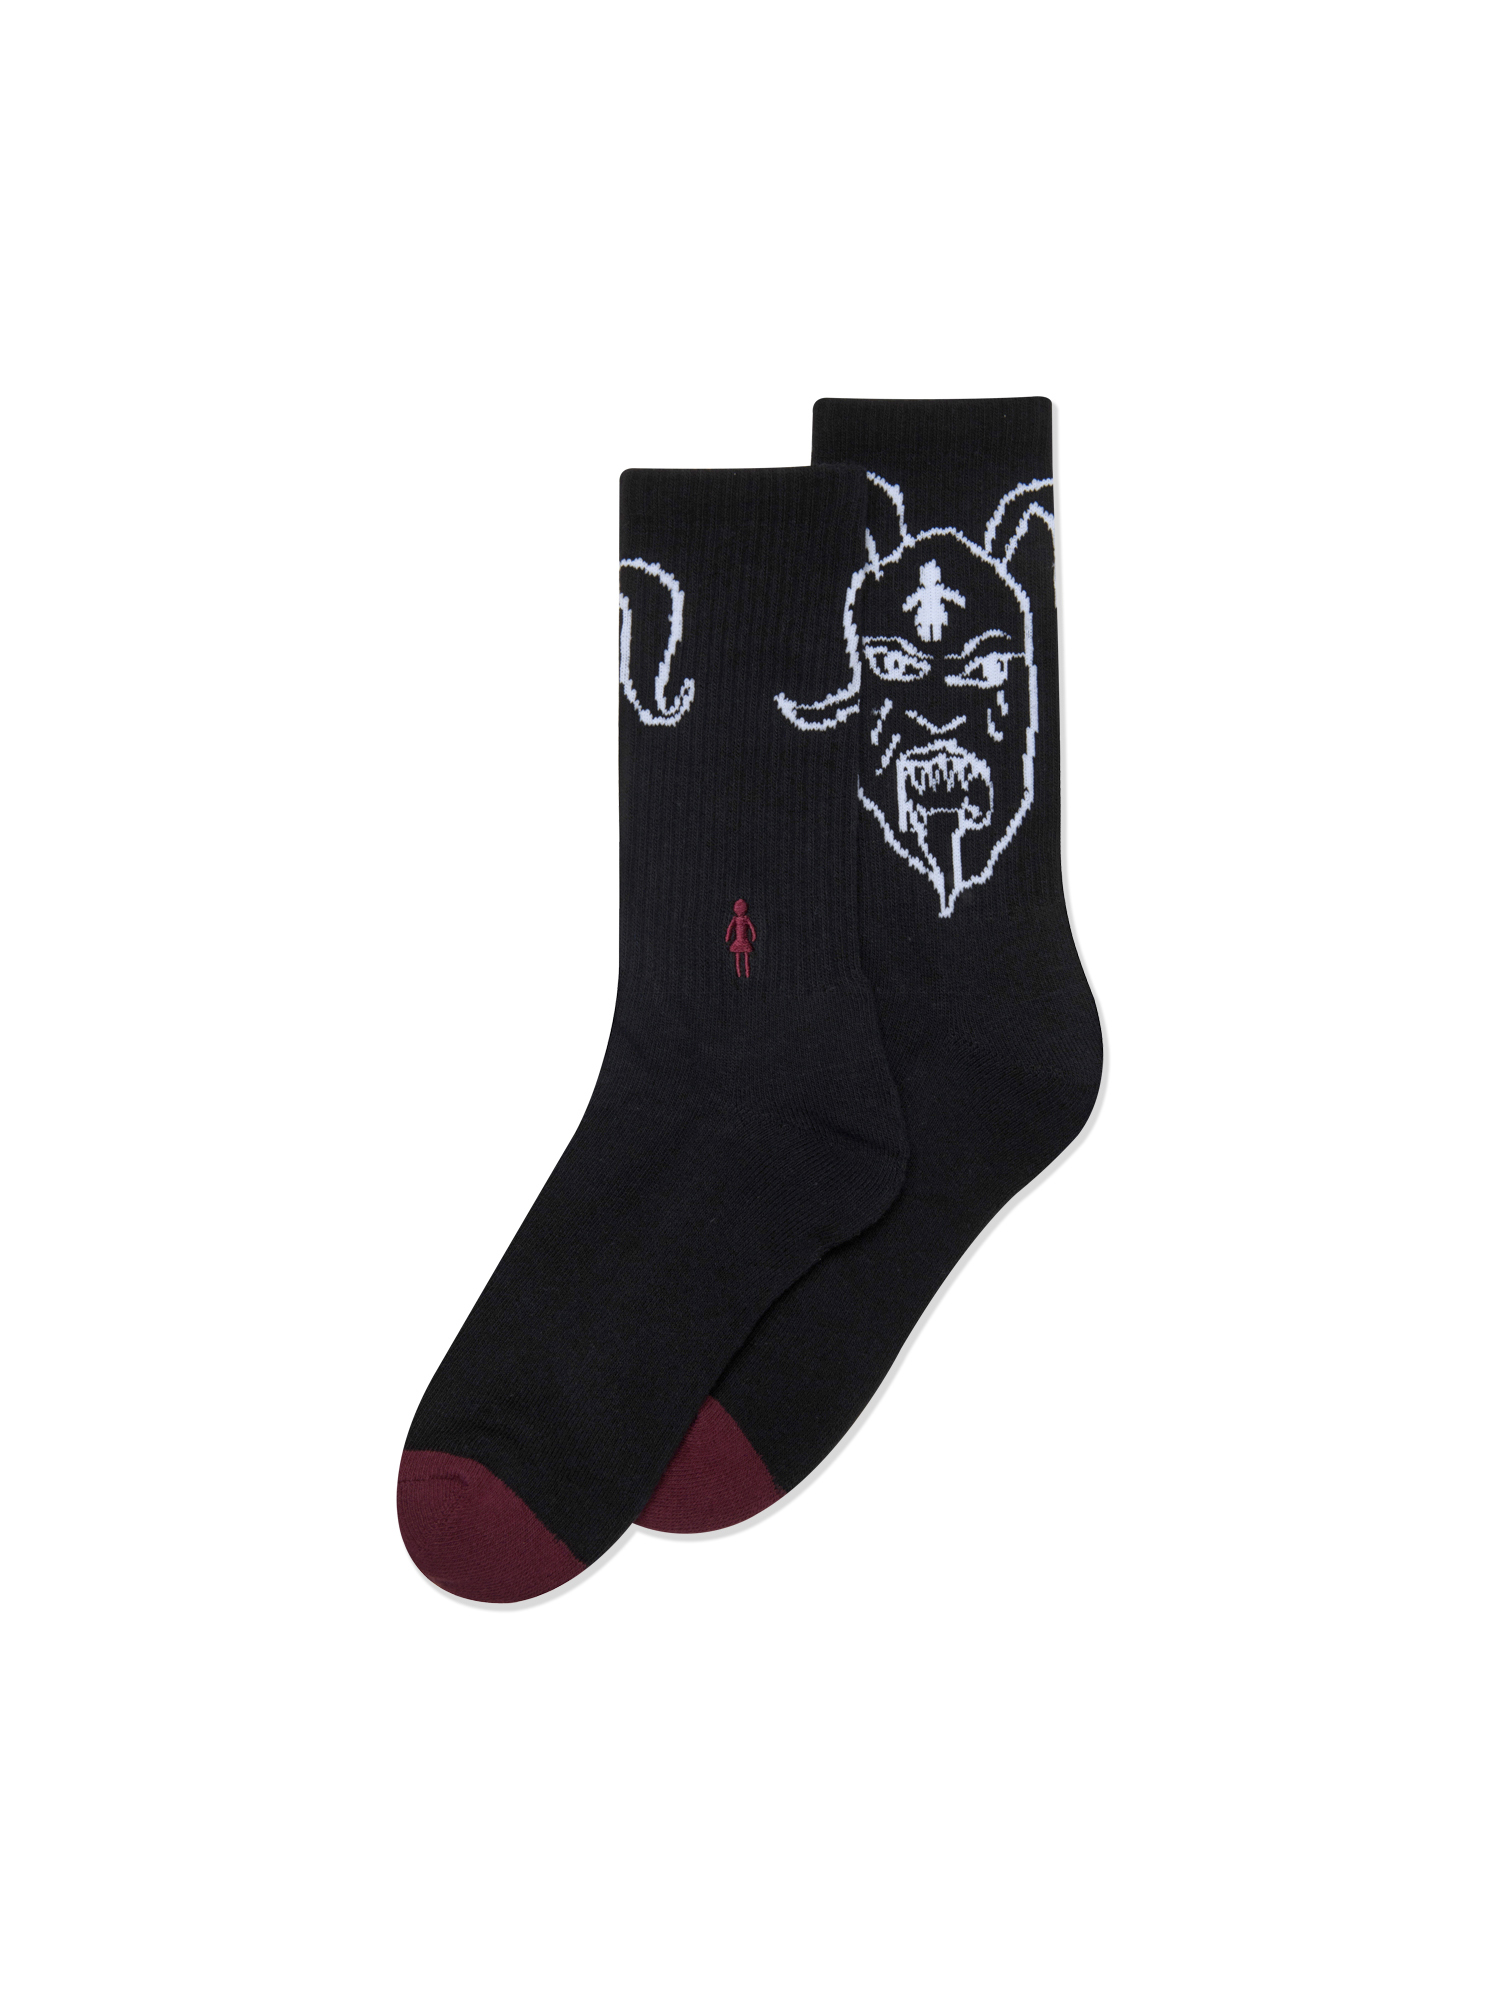 Devil Og Socks - Black